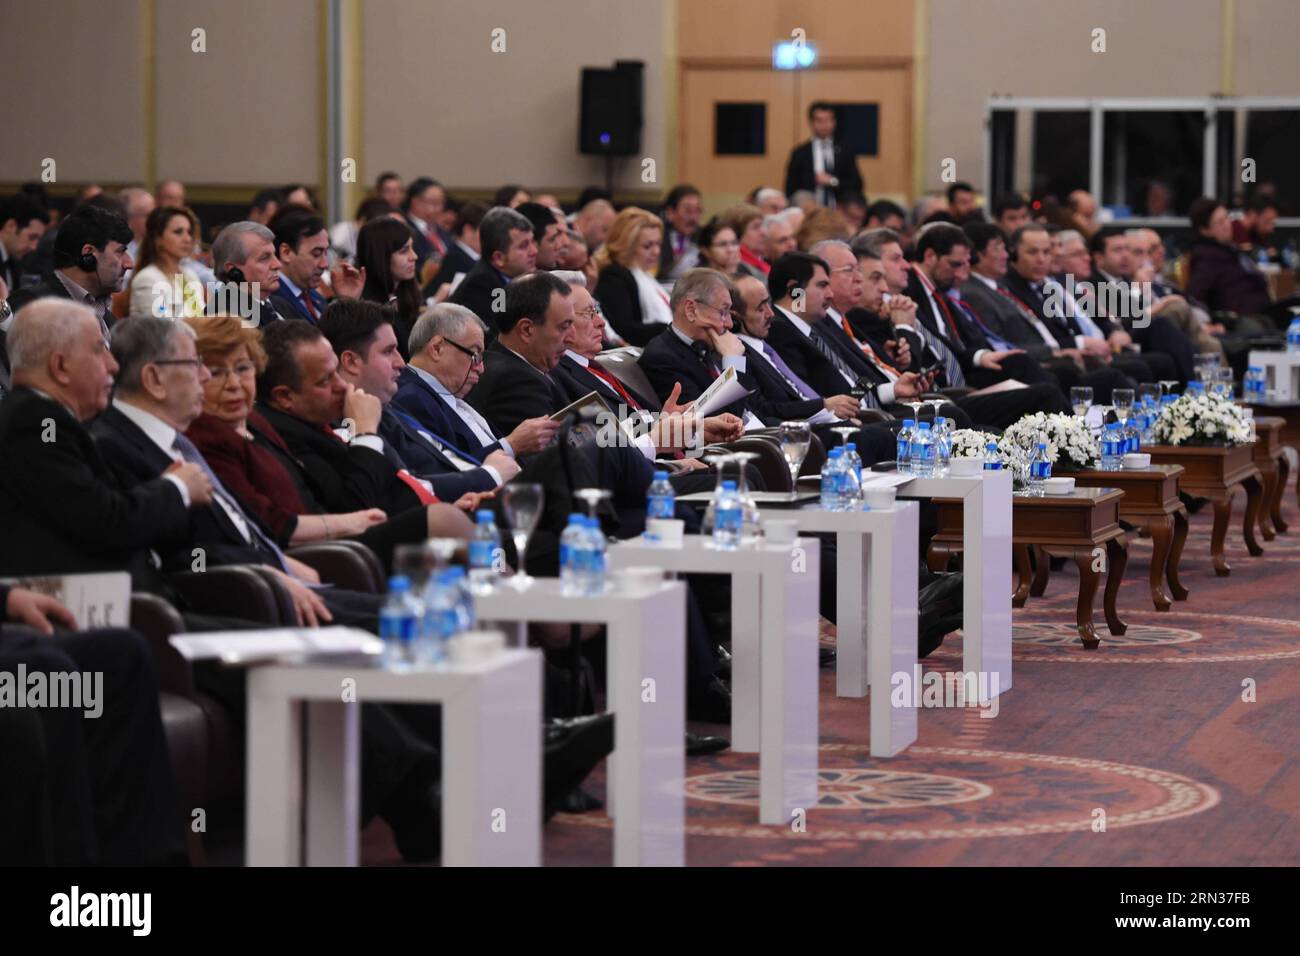 ISTANBUL, avril 8,2015 -- les délégués assistent à la cérémonie d'ouverture du 18e Sommet de l'économie eurasienne à Istanbul, Turquie, le 8 avril 2015. L'initiative de la route de la soie a été présentée comme le nouveau modèle de coopération pour le 21e siècle lors du Sommet de l'économie eurasienne à Istanbul mercredi. ) SOMMET TURQUIE-ISTANBUL-ÉCONOMIE EURASIENNE HexCanling PUBLICATIONxNOTxINxCHN Istanbul avril 8 2015 les délégués assistent à la cérémonie d'ouverture du 18e Sommet de l'économie EURASIENNE à Istanbul Turquie avril 8 2015 l'Initiative de la route de la soie a été présentée comme le nouveau modèle de coopération pour le 21e siècle À L'ère Banque D'Images